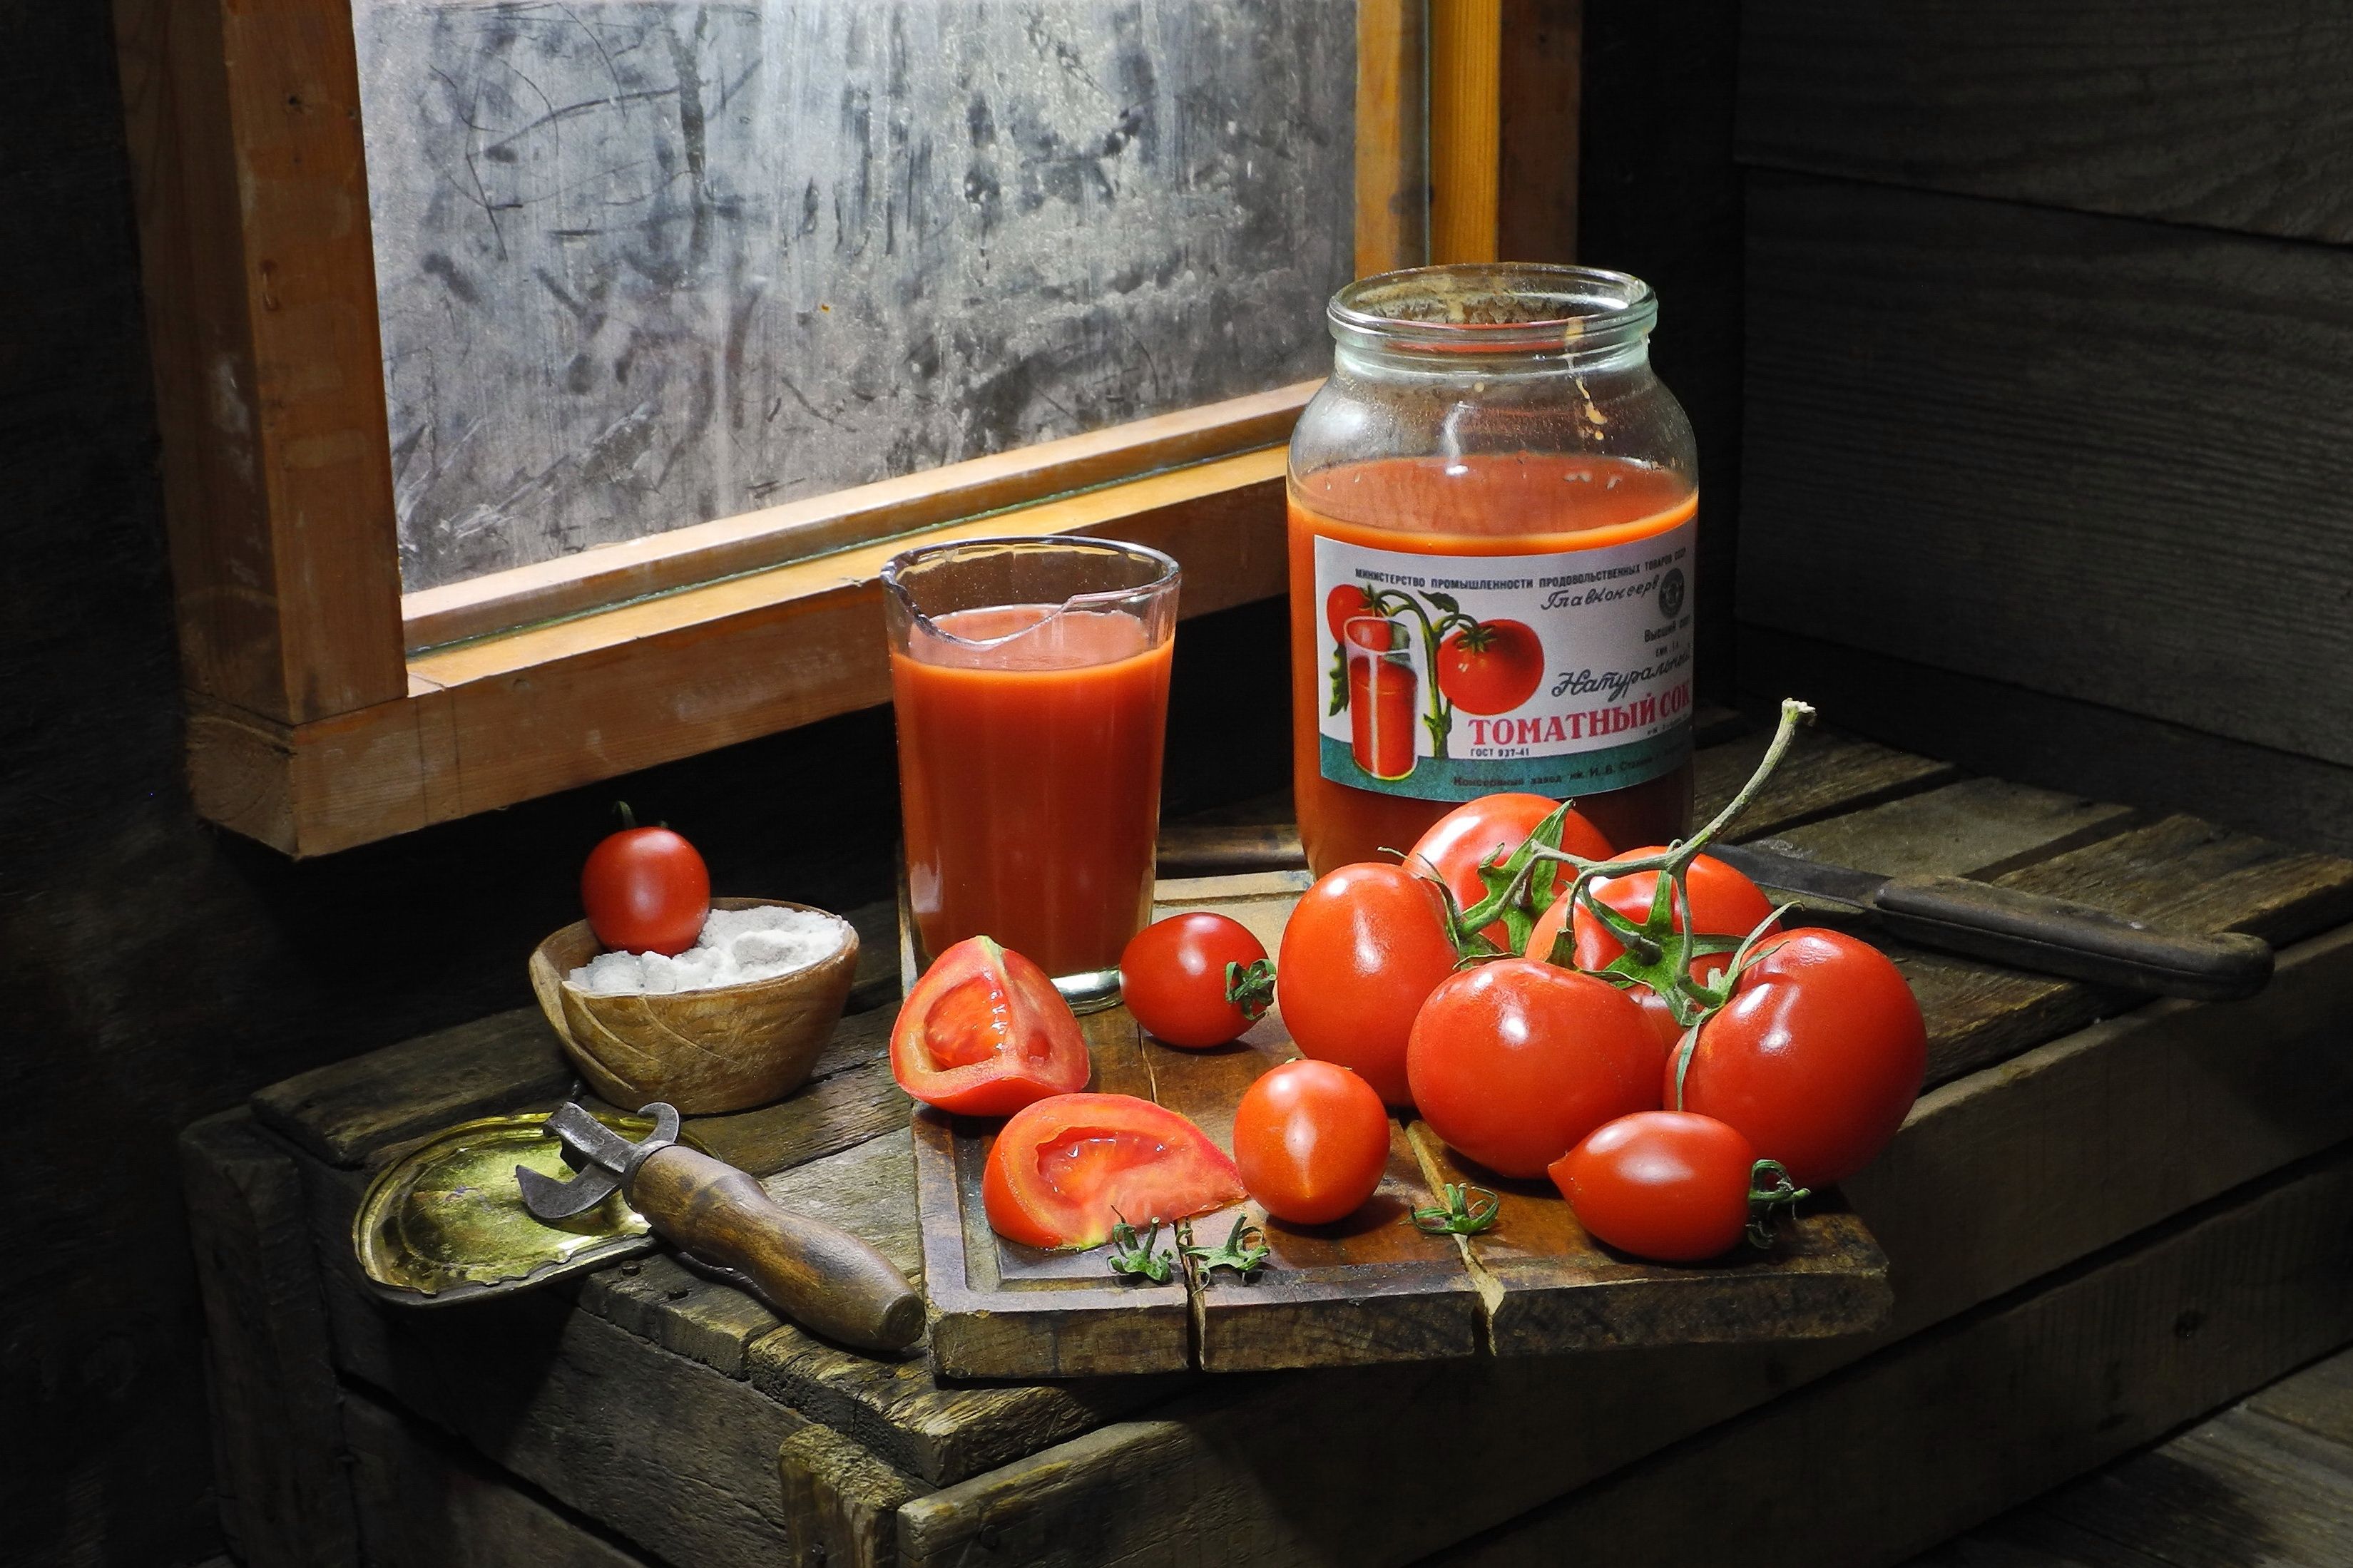 томатный сок, томат, помидоры,стакан, банка, соль,, Сергей Фунтовой